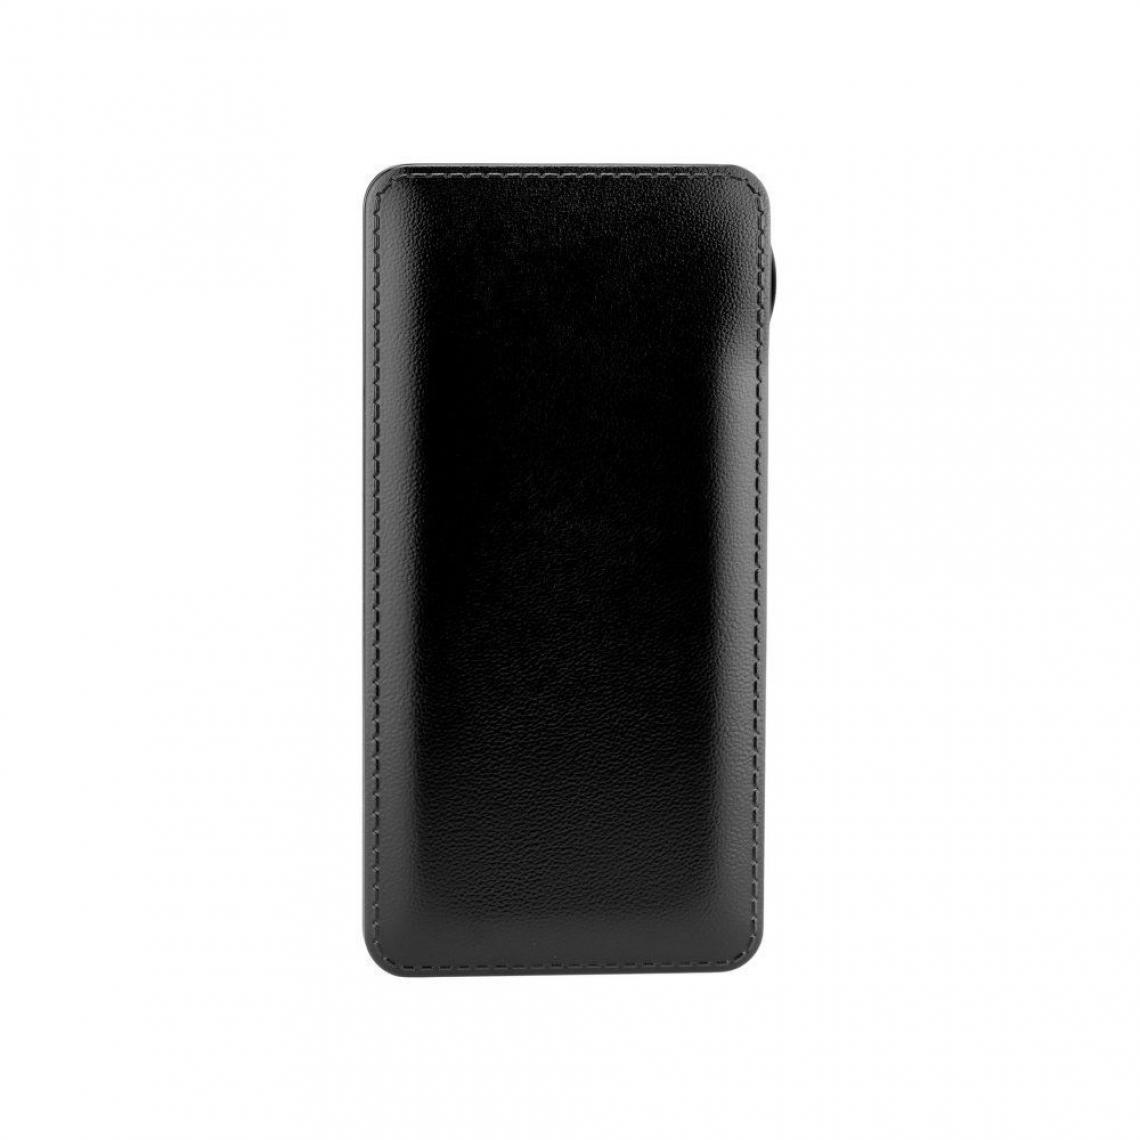 Ozzzo - Chargeur batterie externe 30000 mAh powerbank ozzzo noir pour UMiDIGI Bison - Autres accessoires smartphone